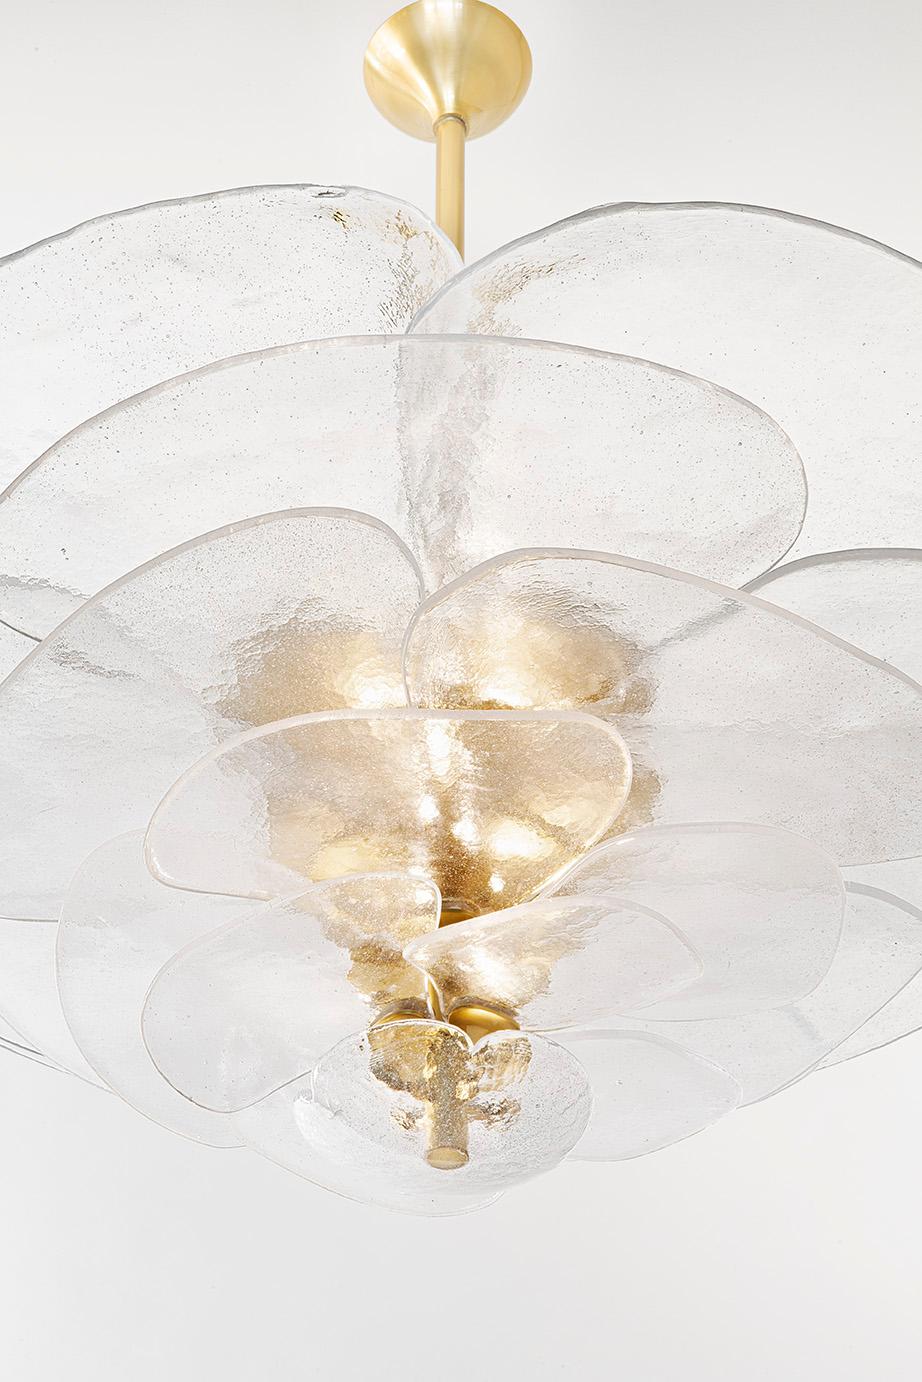 Lustre en verre texturé composé de pétales individuels bullés montés sur une structure en laiton, en forme de fleur de nénuphar qui diffuse la lumière. 
Le lustre est composé de 24 spots.
Le tout est fabriqué dans le nord de l'Italie, près de Venise.